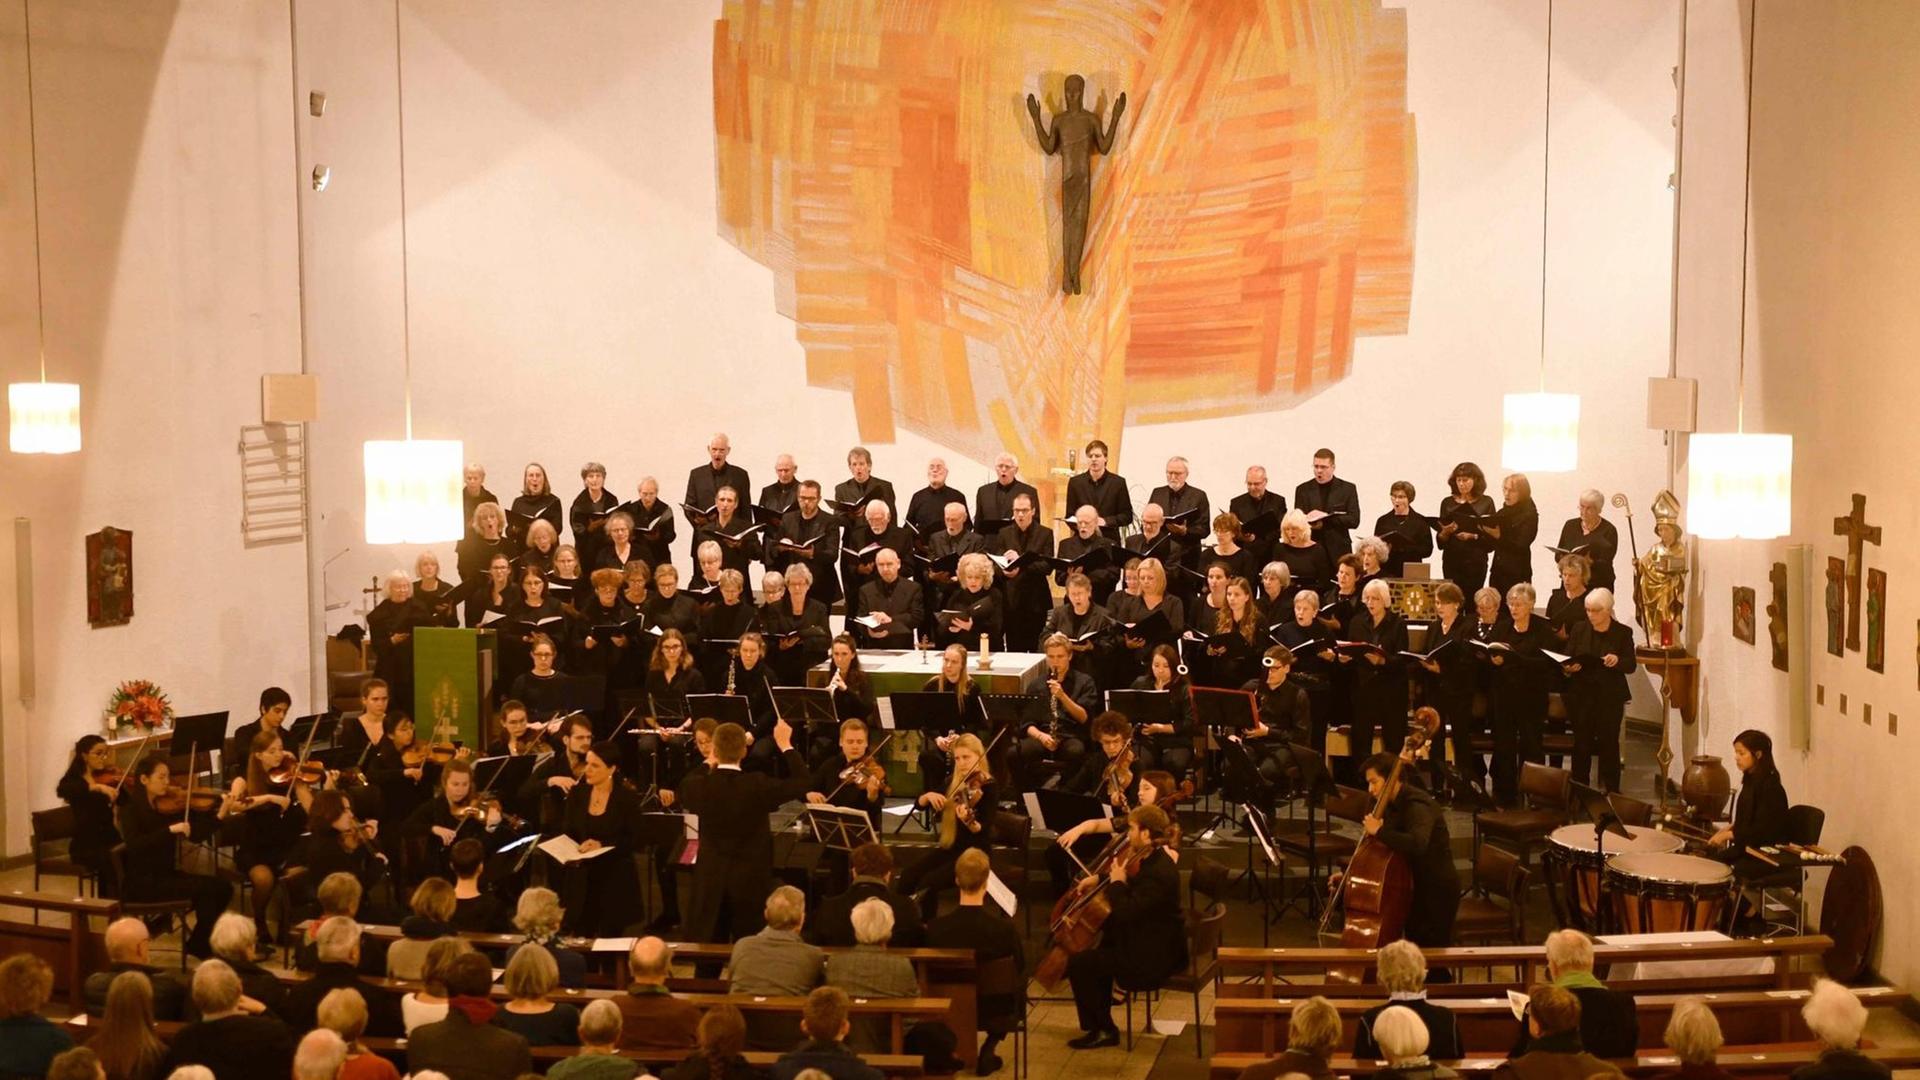 Bild des Chores in einer Kirche während eines Konzertes.